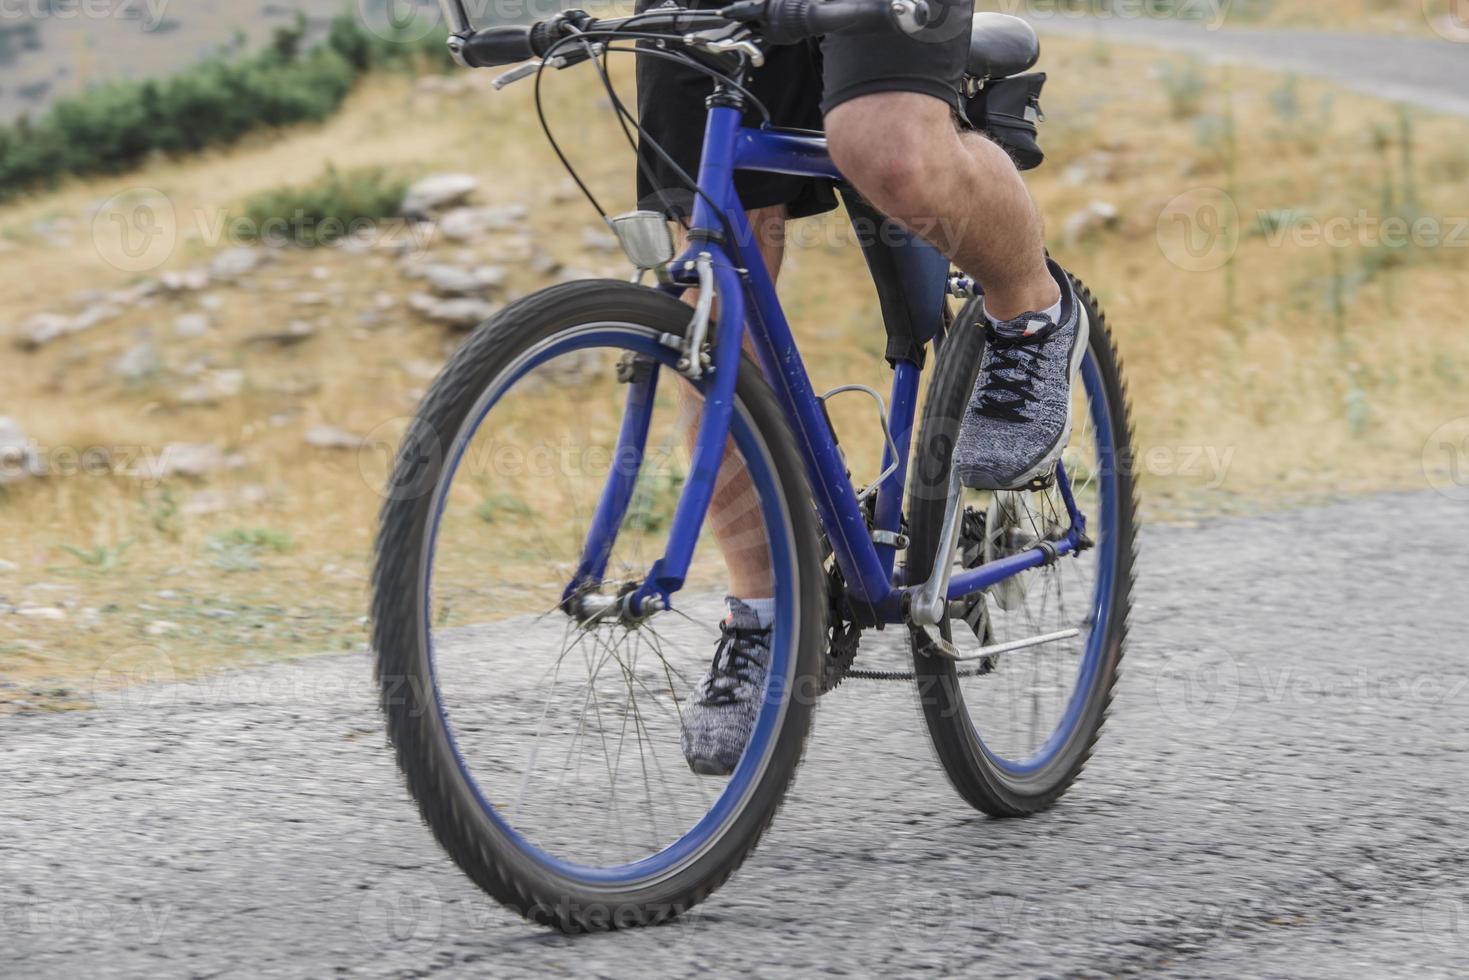 Extreme mountain bike sport athlete man riding outdoors lifestyle trail photo